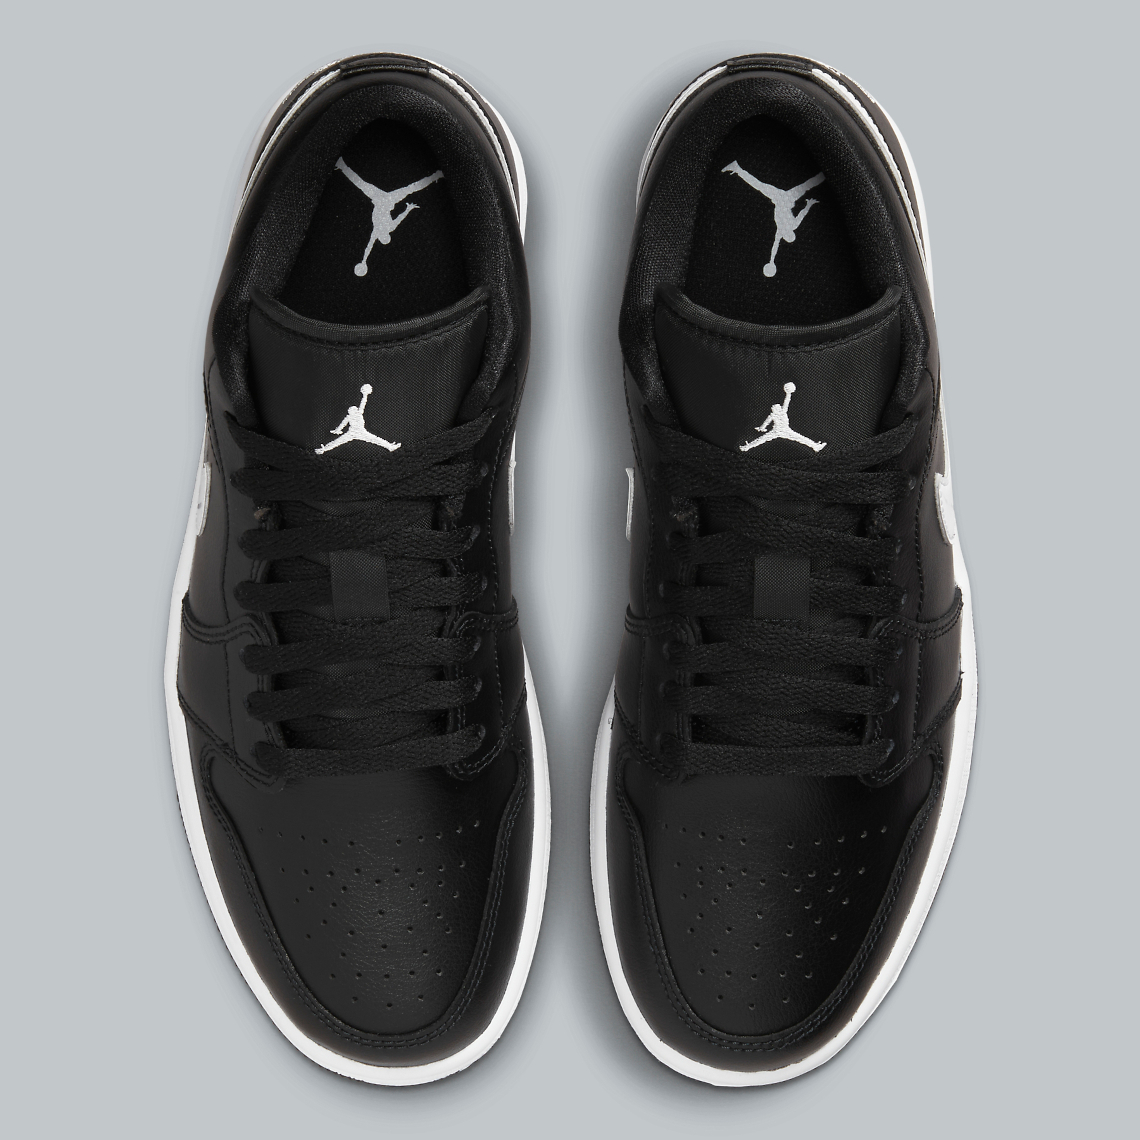 Air Jordan jordan 1 low black 1 Low "Black/White" DV0990-001 Release | SneakerNews.com